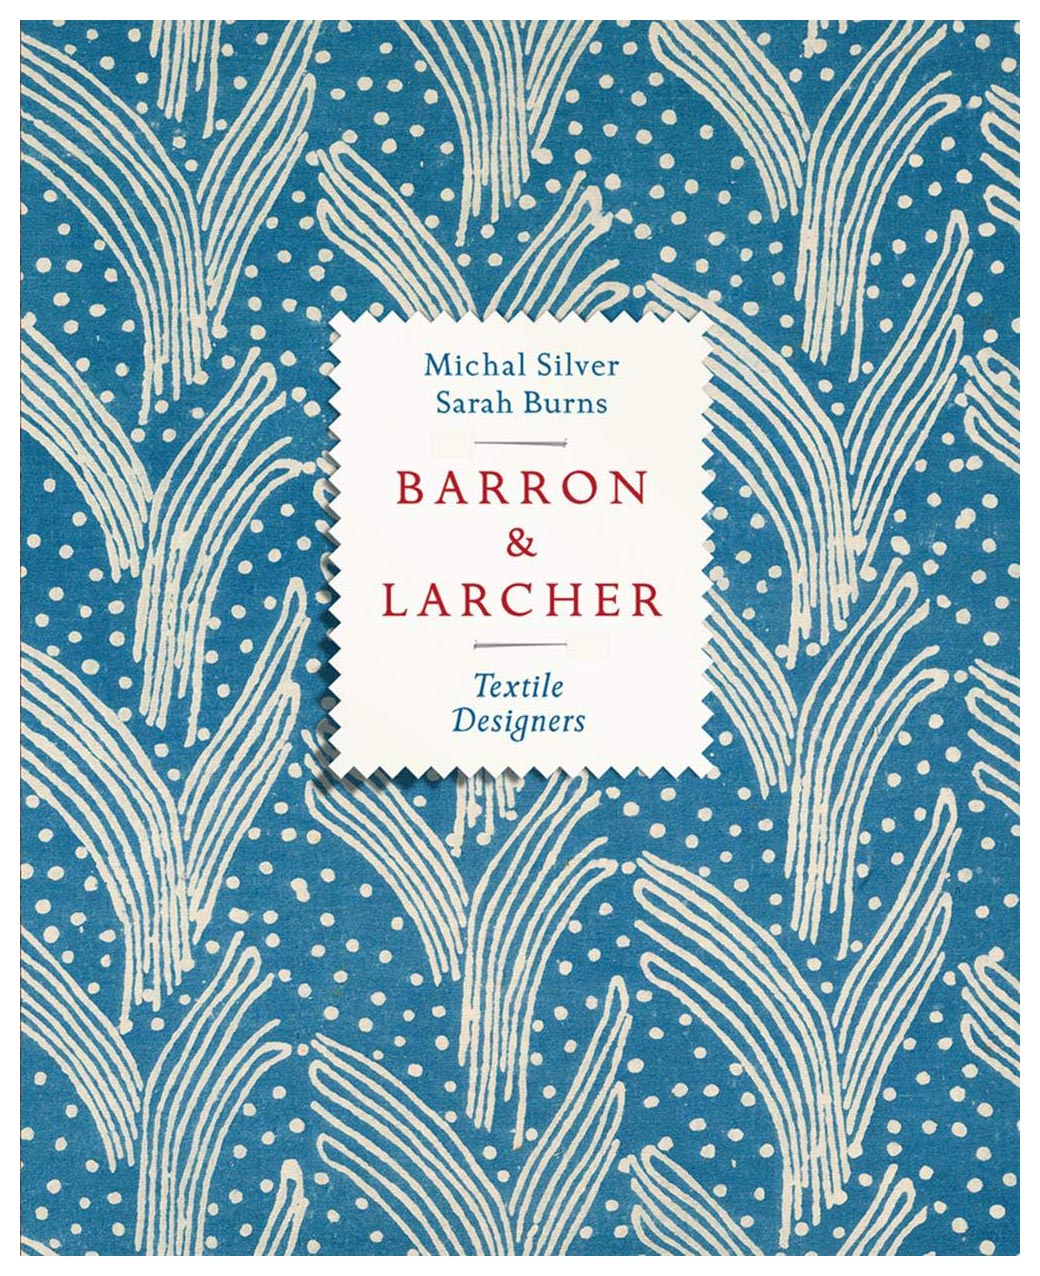  - Barron & Larcher Textile Designers